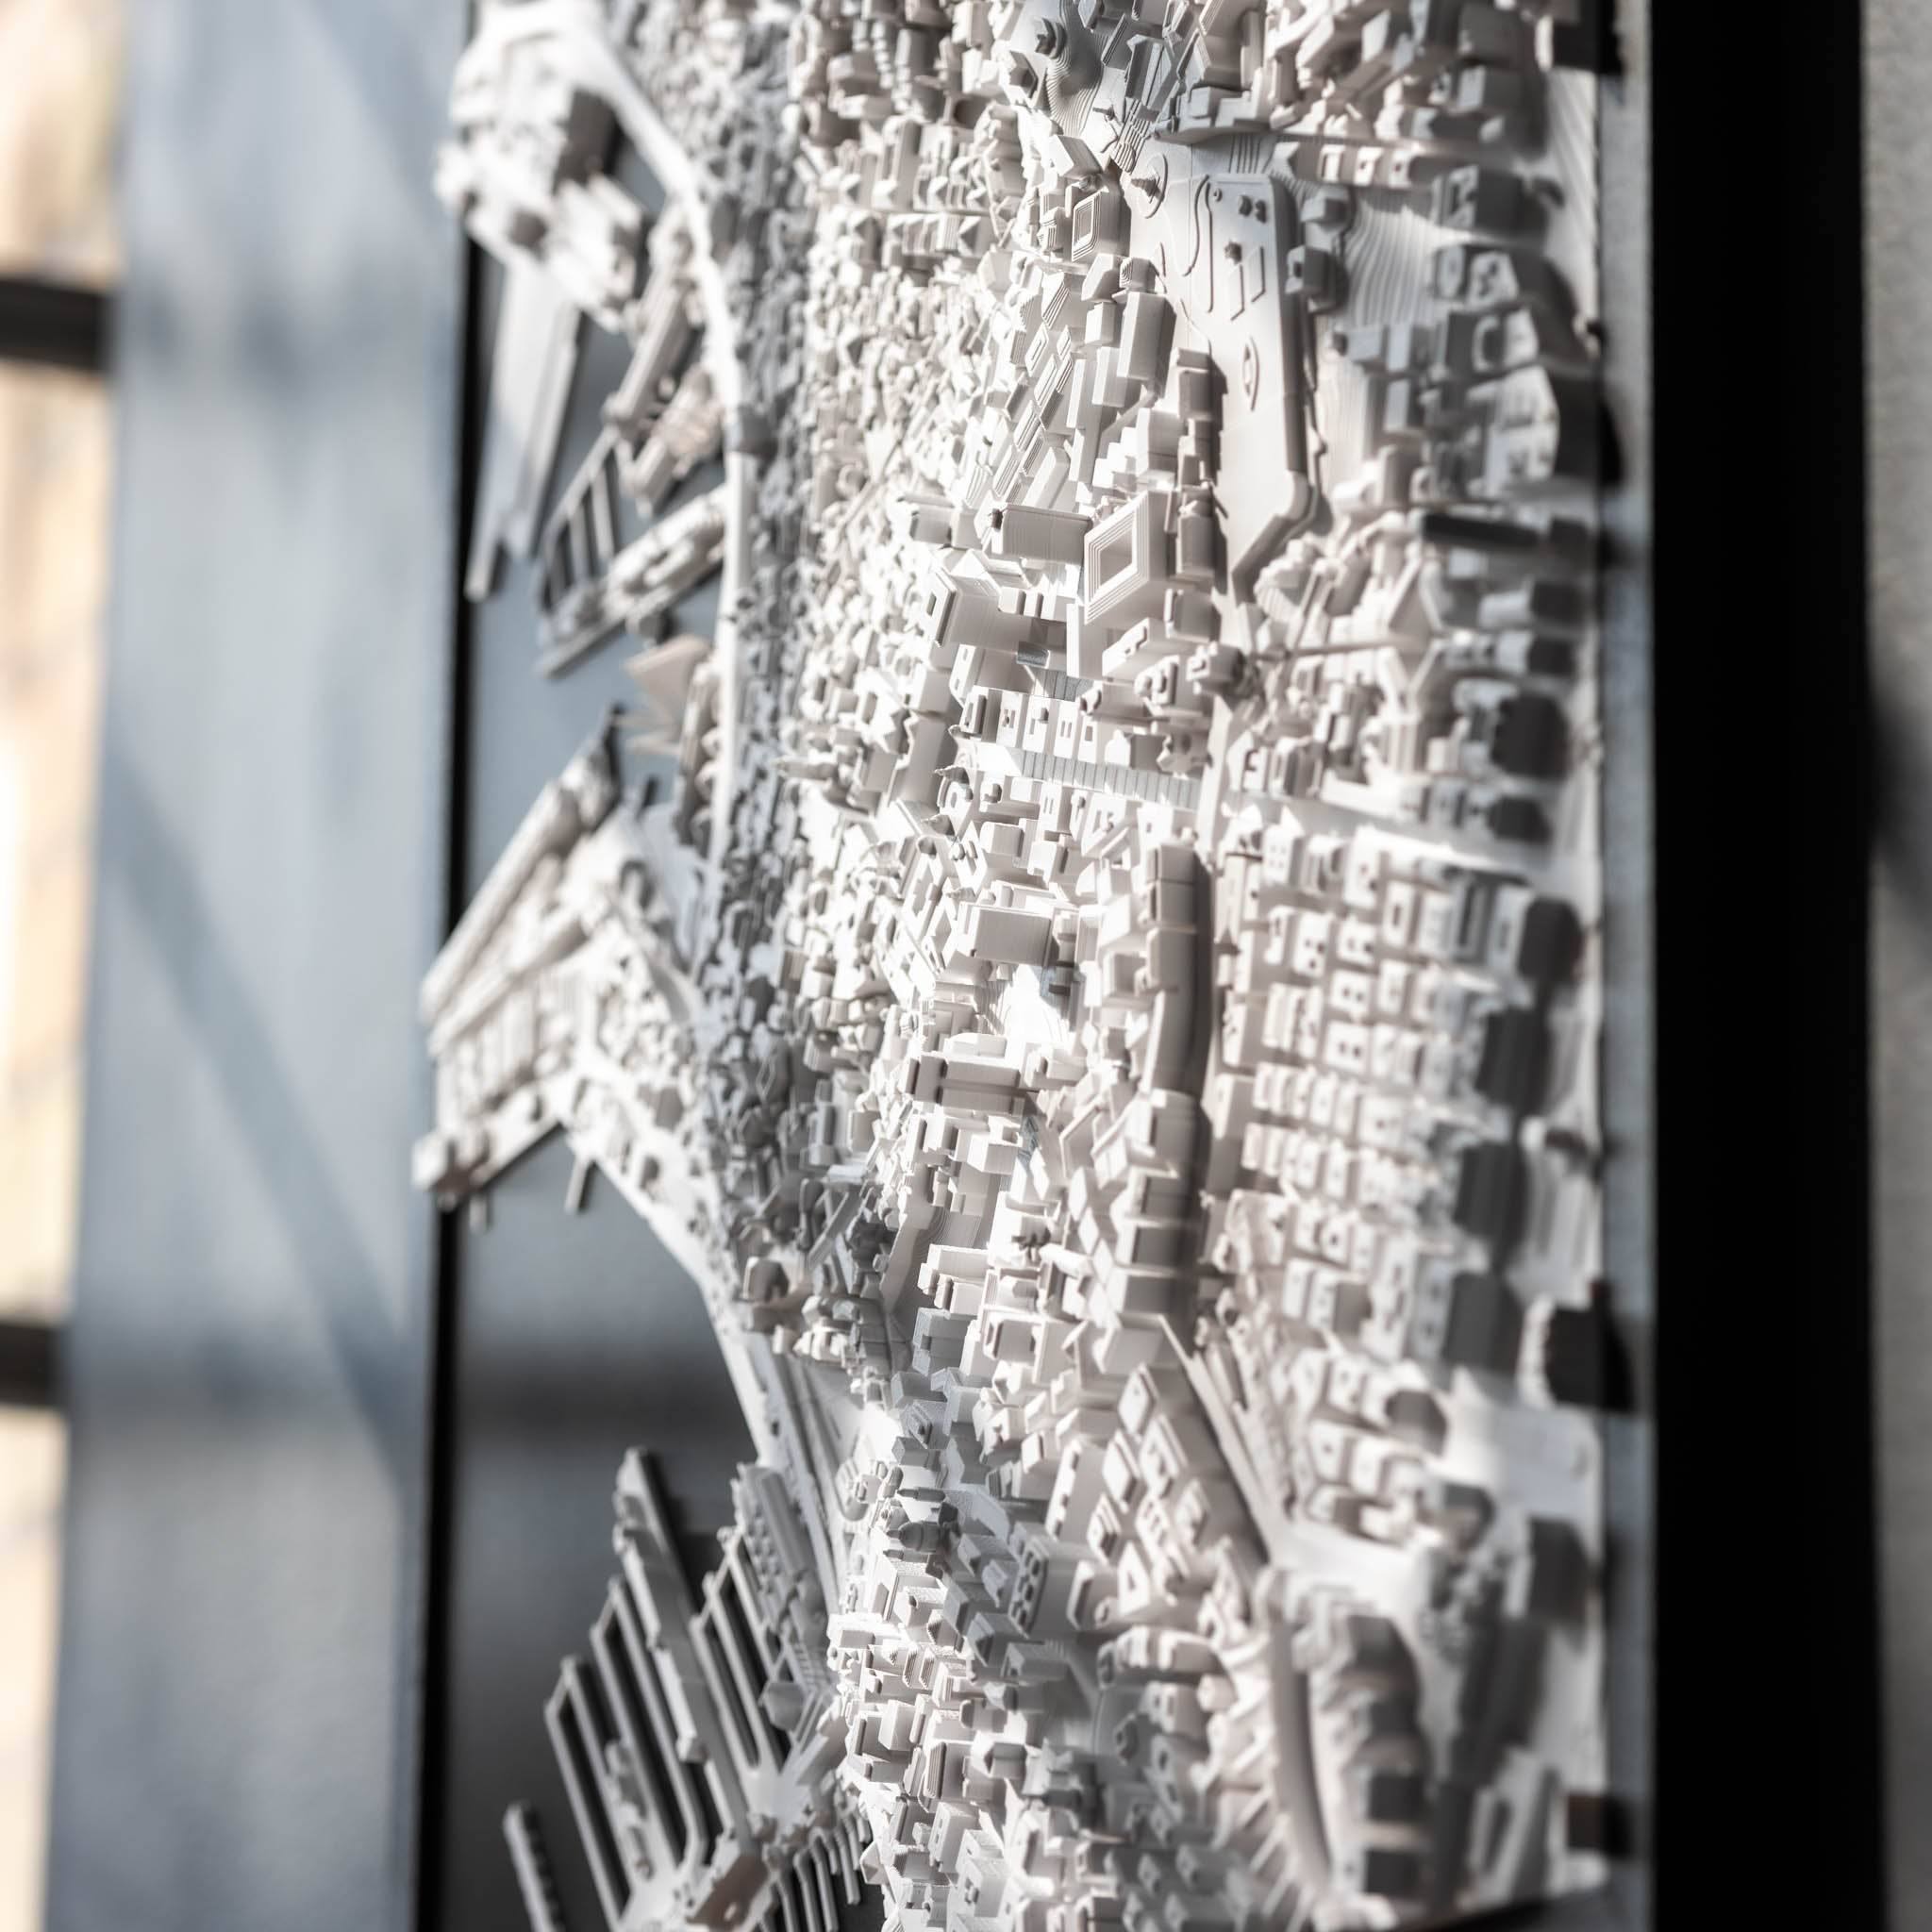 Genoa Frame 3D City Model Europe, Frame - CITYFRAMES